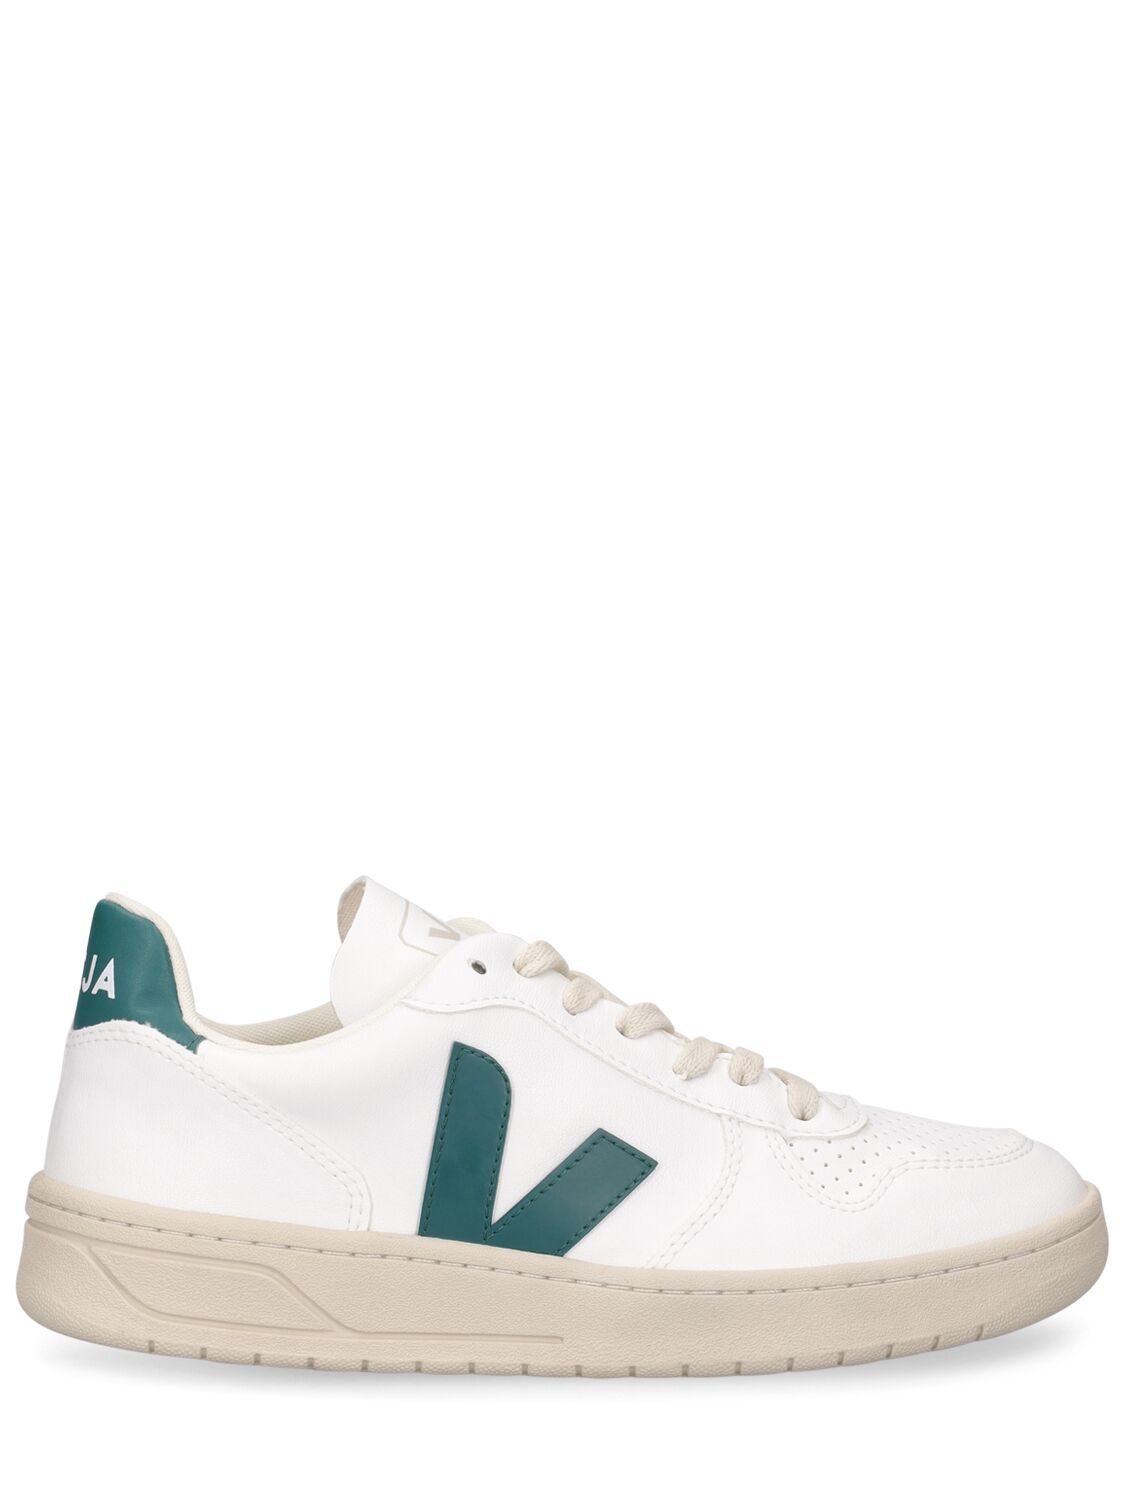 Veja V-10 Sneakers In White